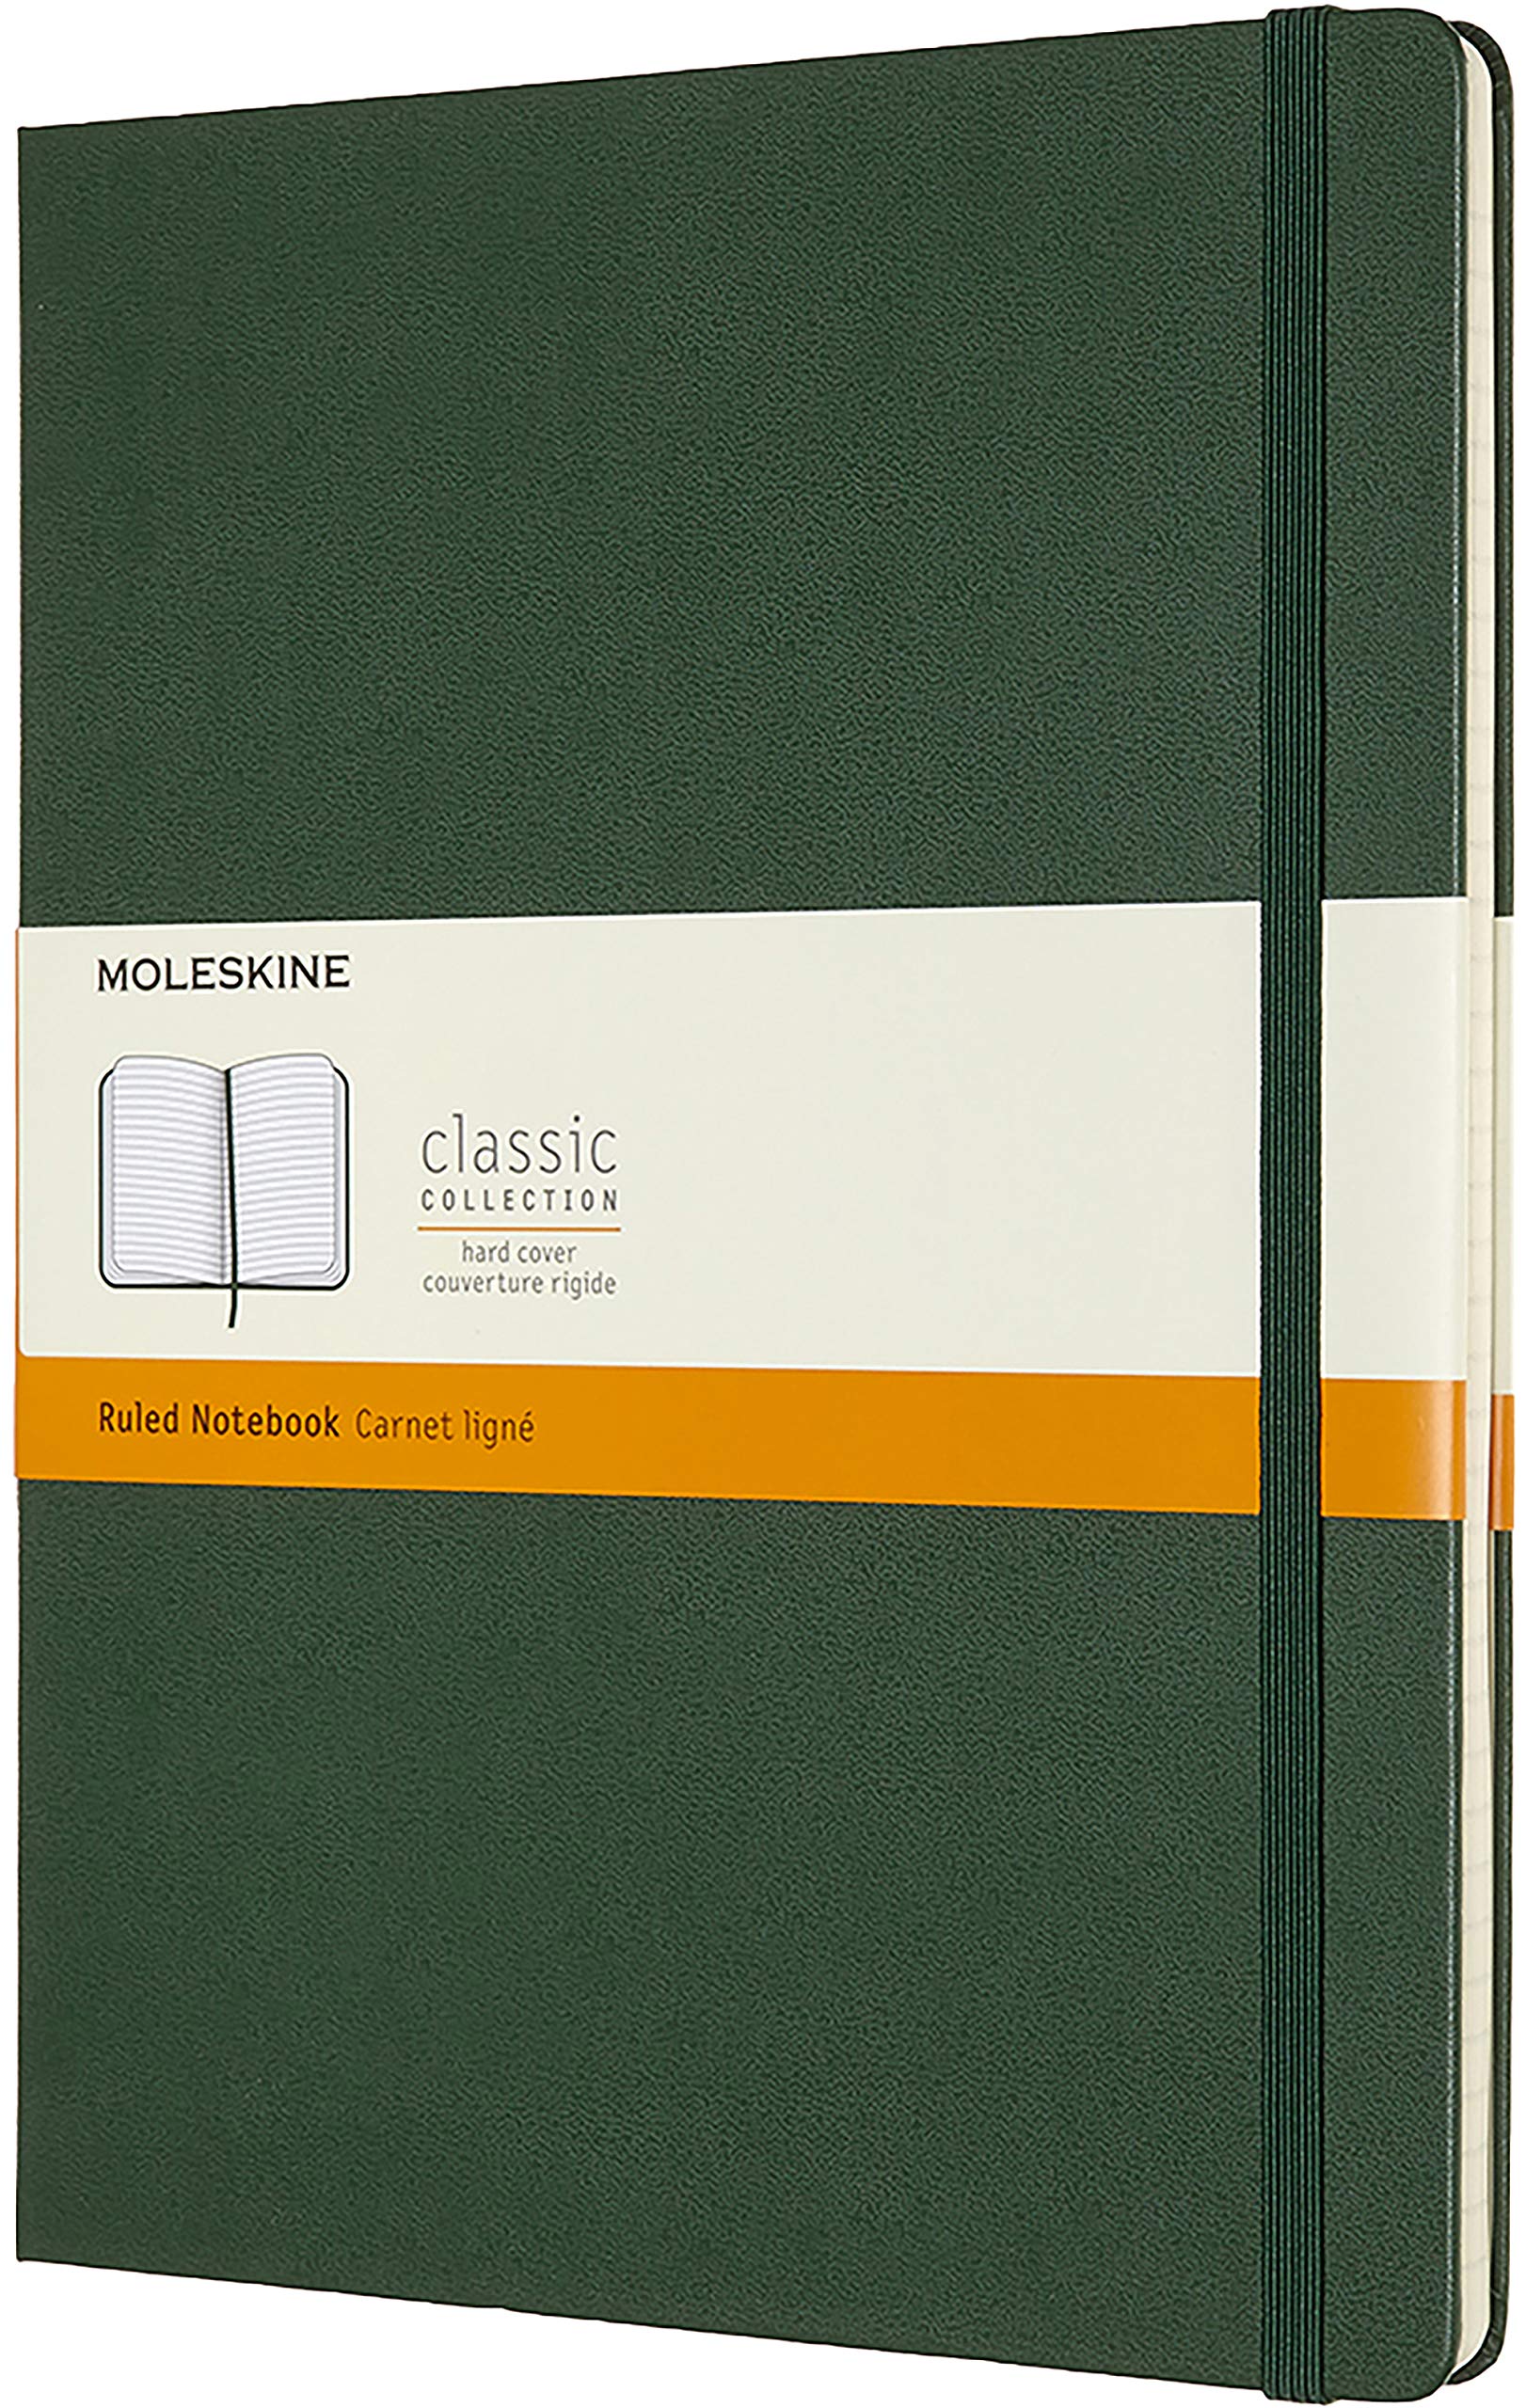 Carnet - Moleskine Classic - Extra Large, Ruled, Hard Cover - Myrtle Green | Moleskine image2